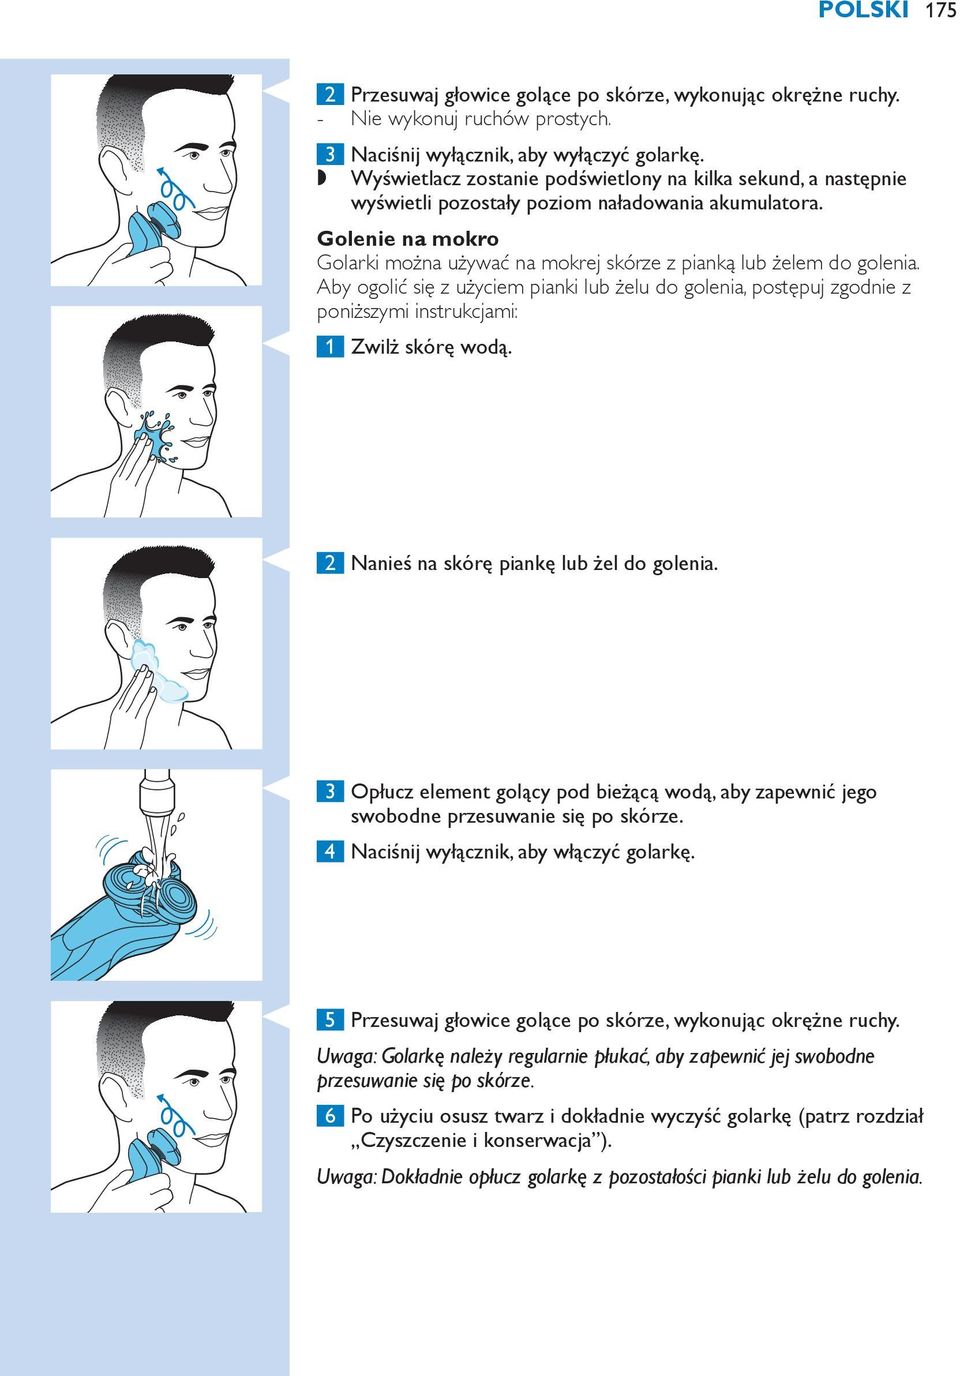 Golenie na mokro Golarki można używać na mokrej skórze z pianką lub żelem do golenia.